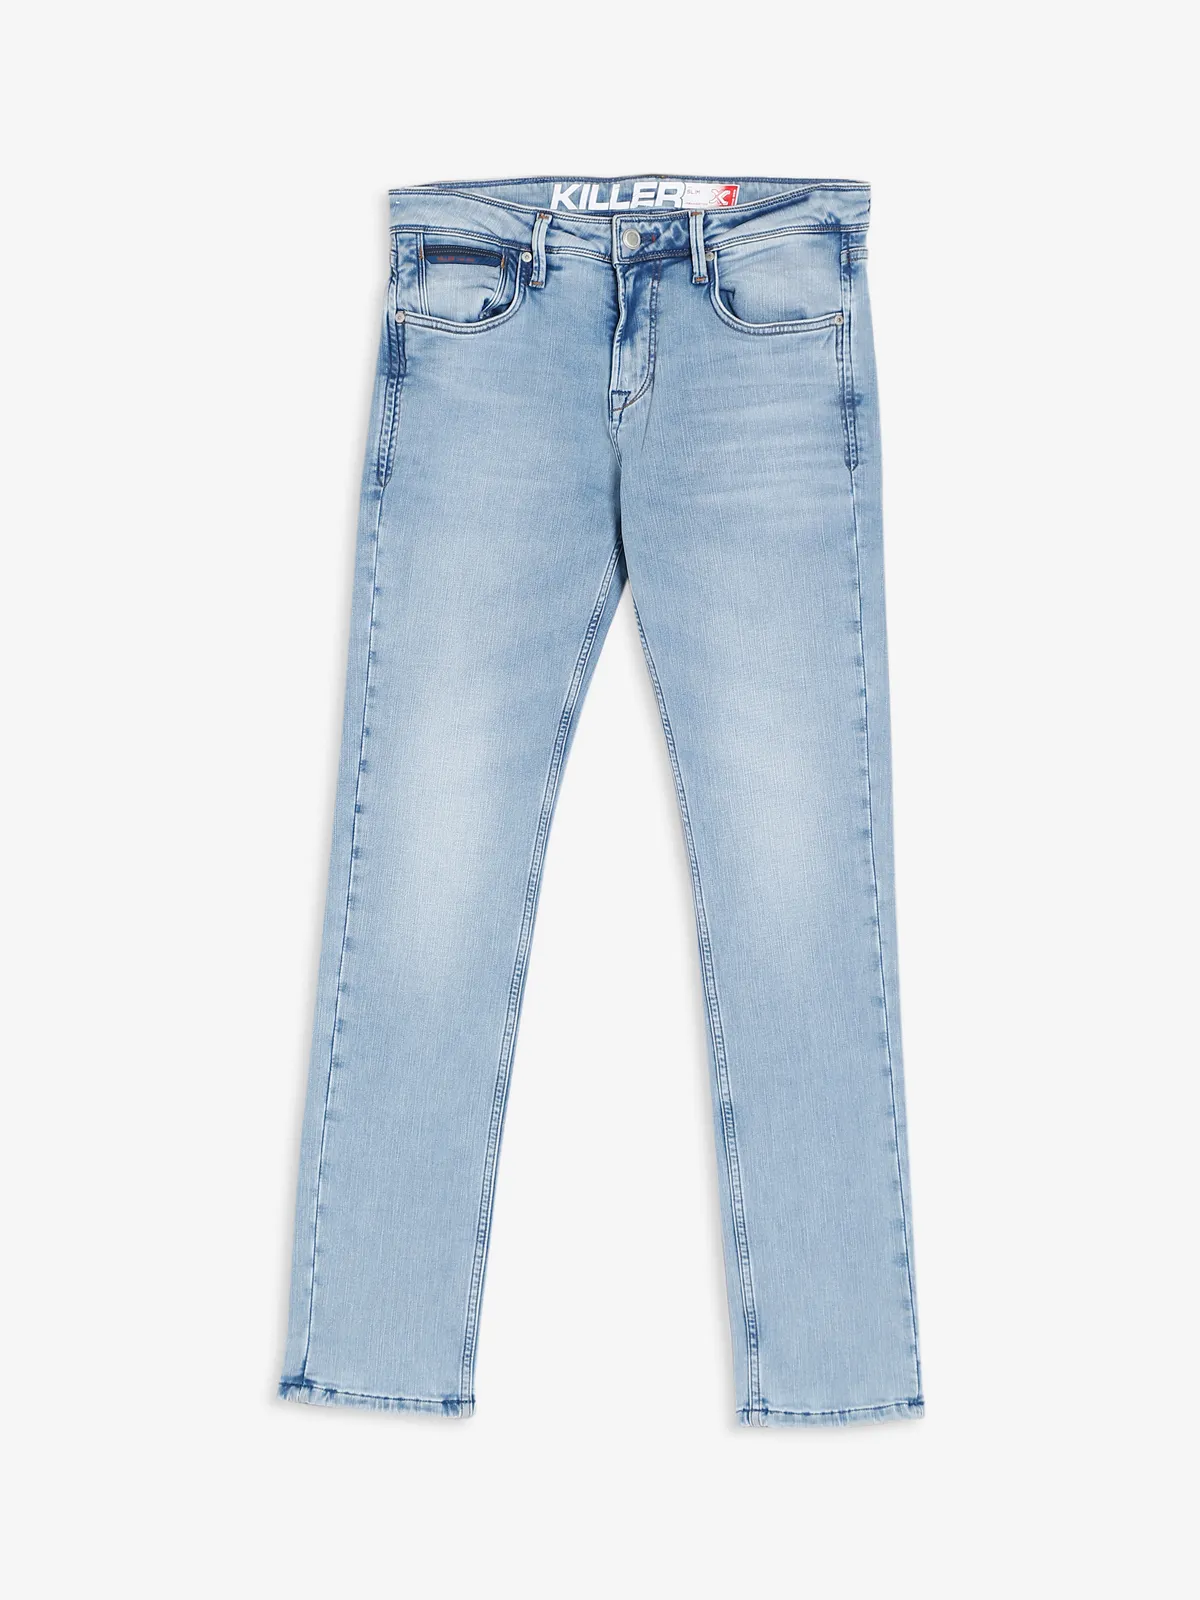 Killer ice blue washed slim fit jeans